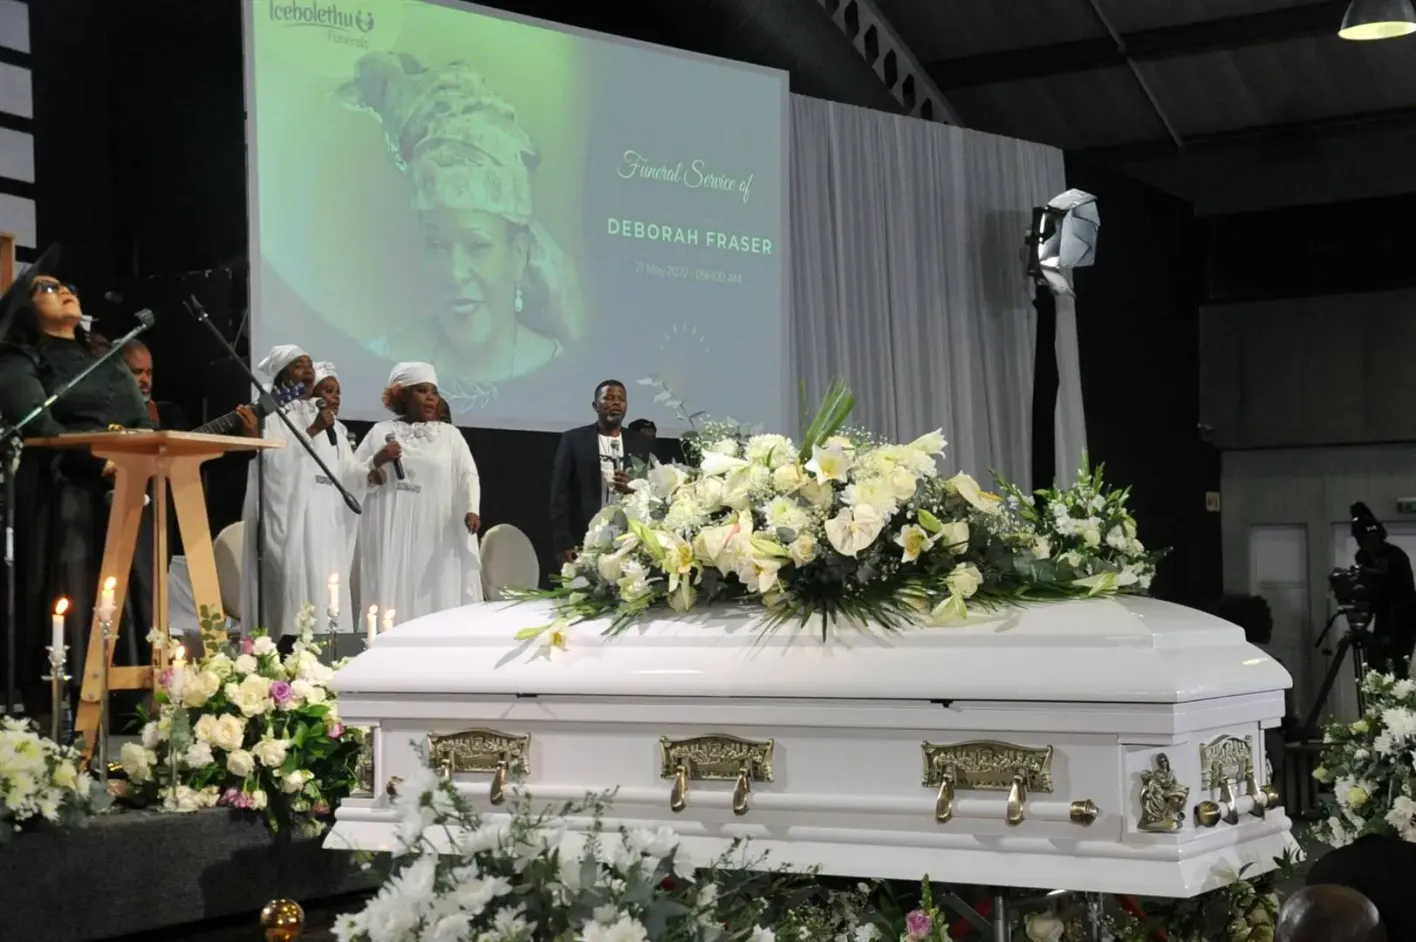 Funeral service held for Deborah Fraser but, singer still not buried